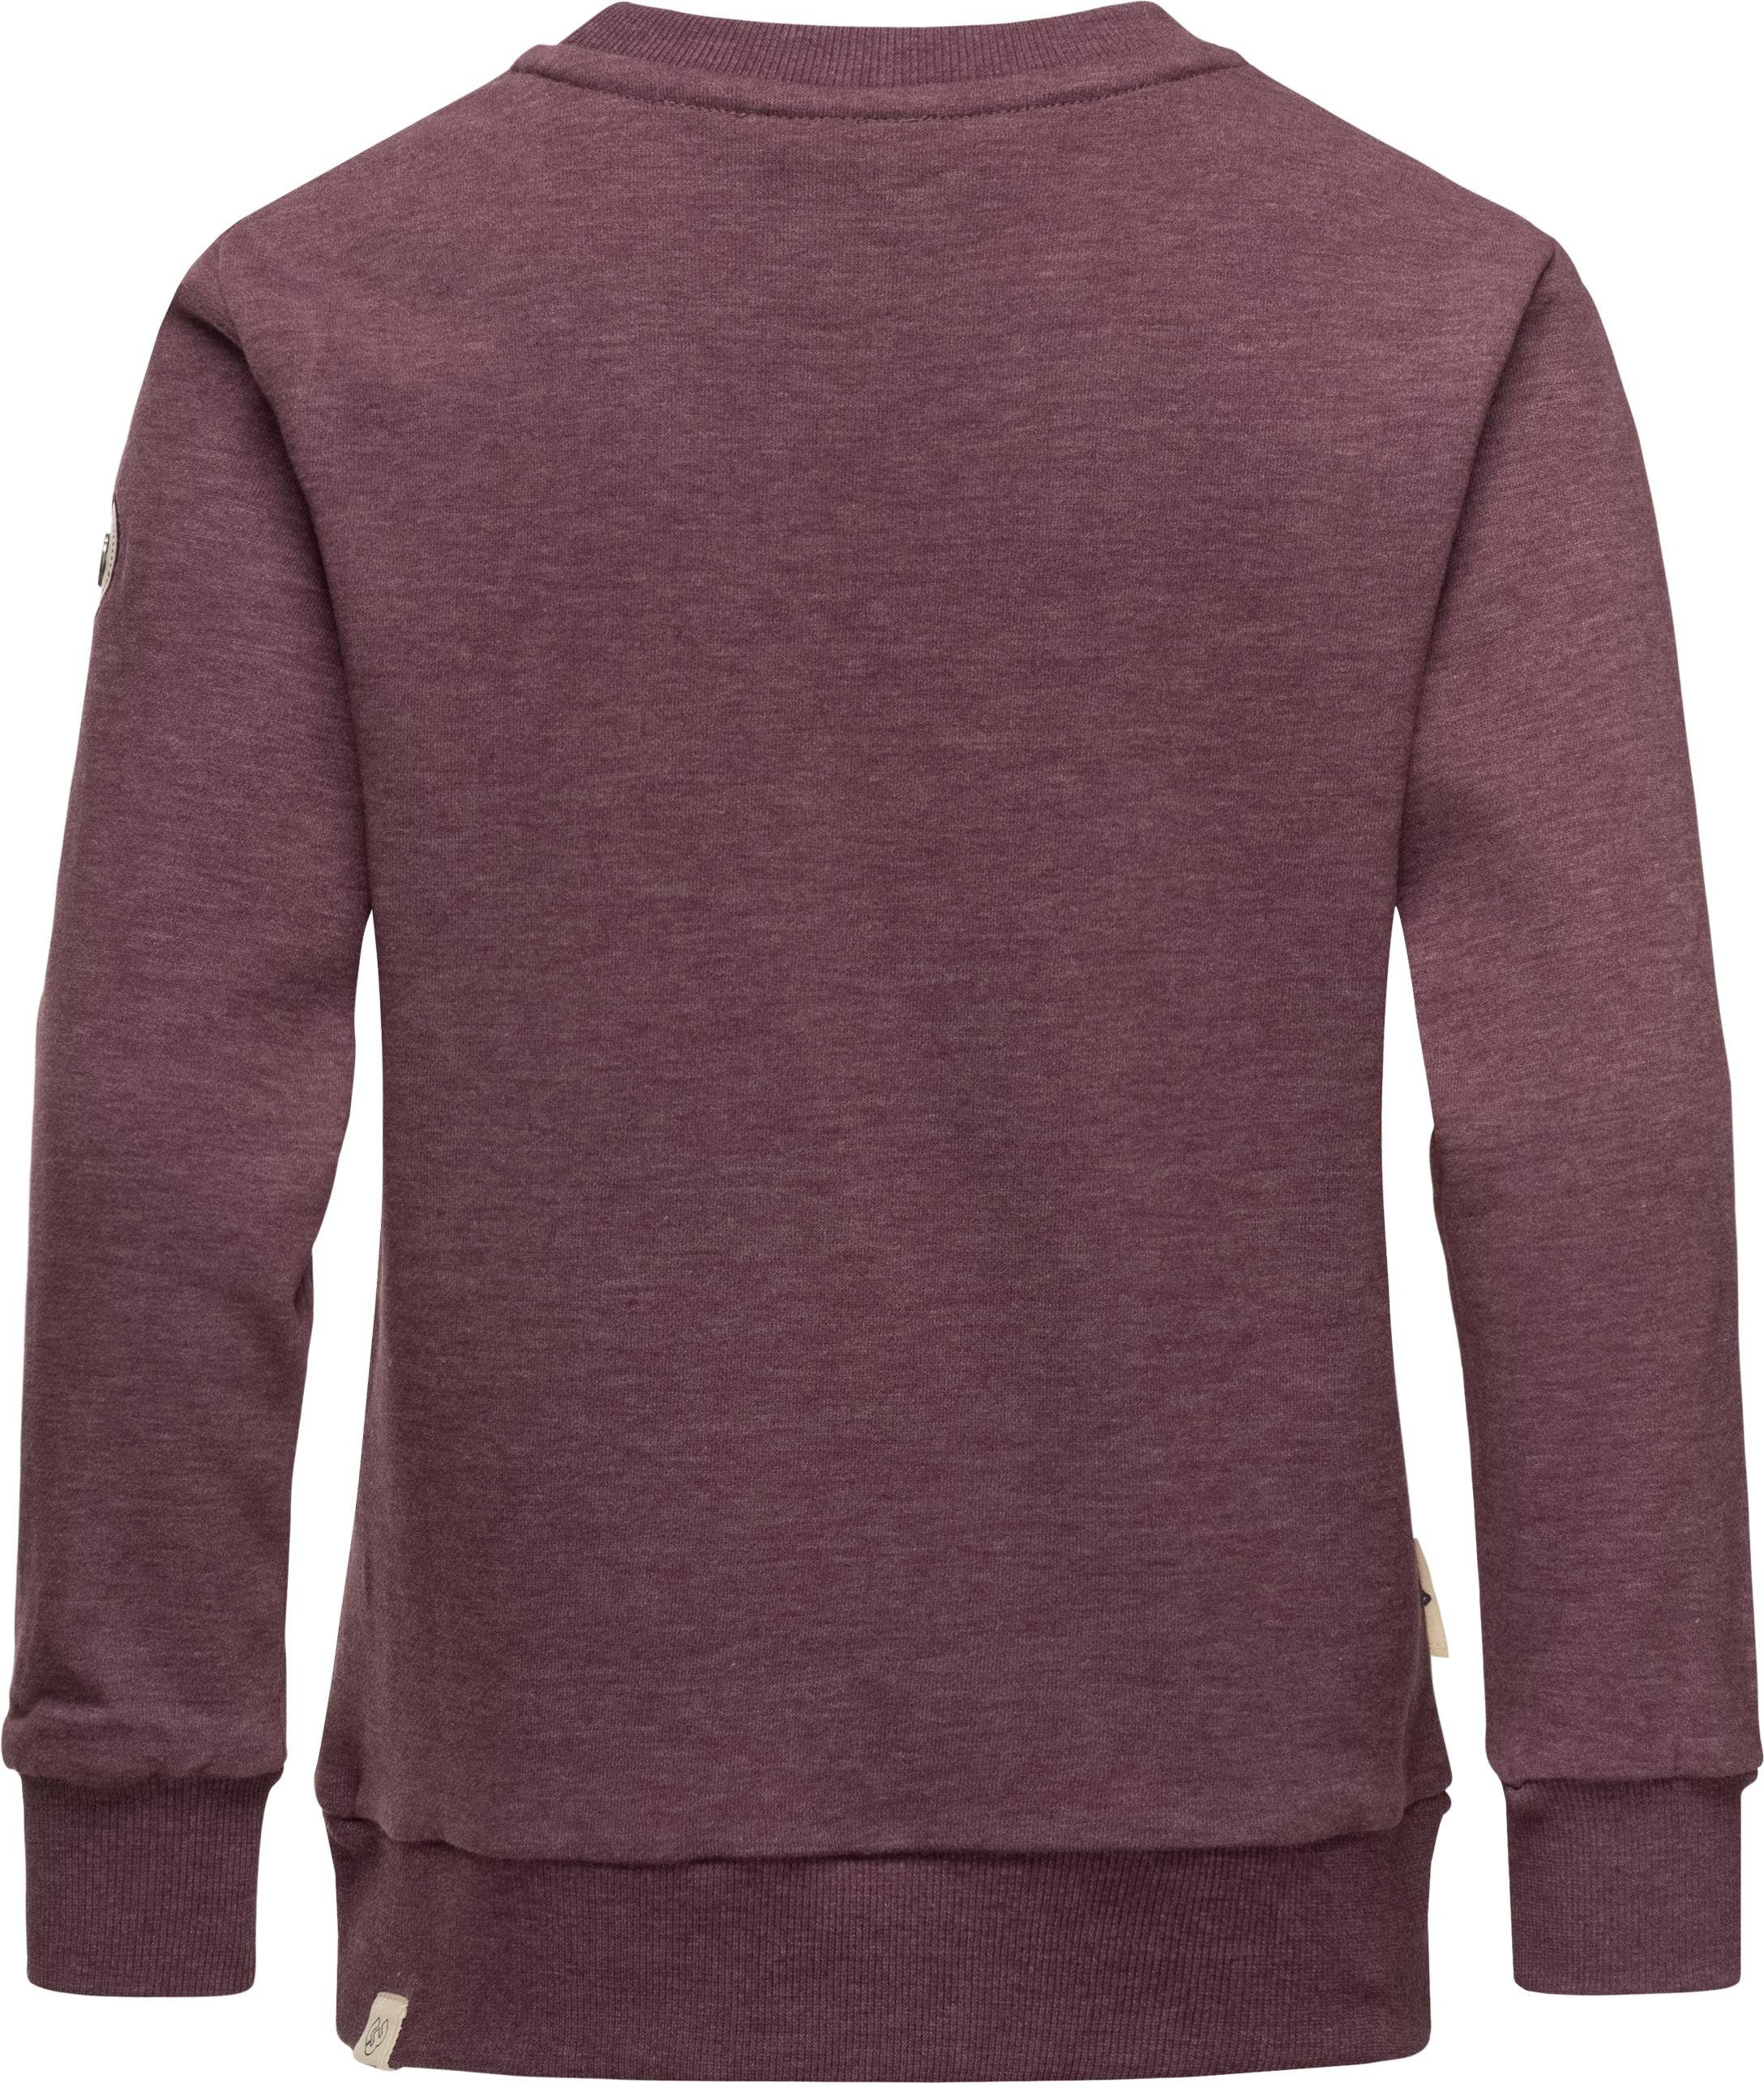 Ragwear Sweater Evka Print Print Organic mit stylisches Mädchen pflaume Sweatshirt coolem